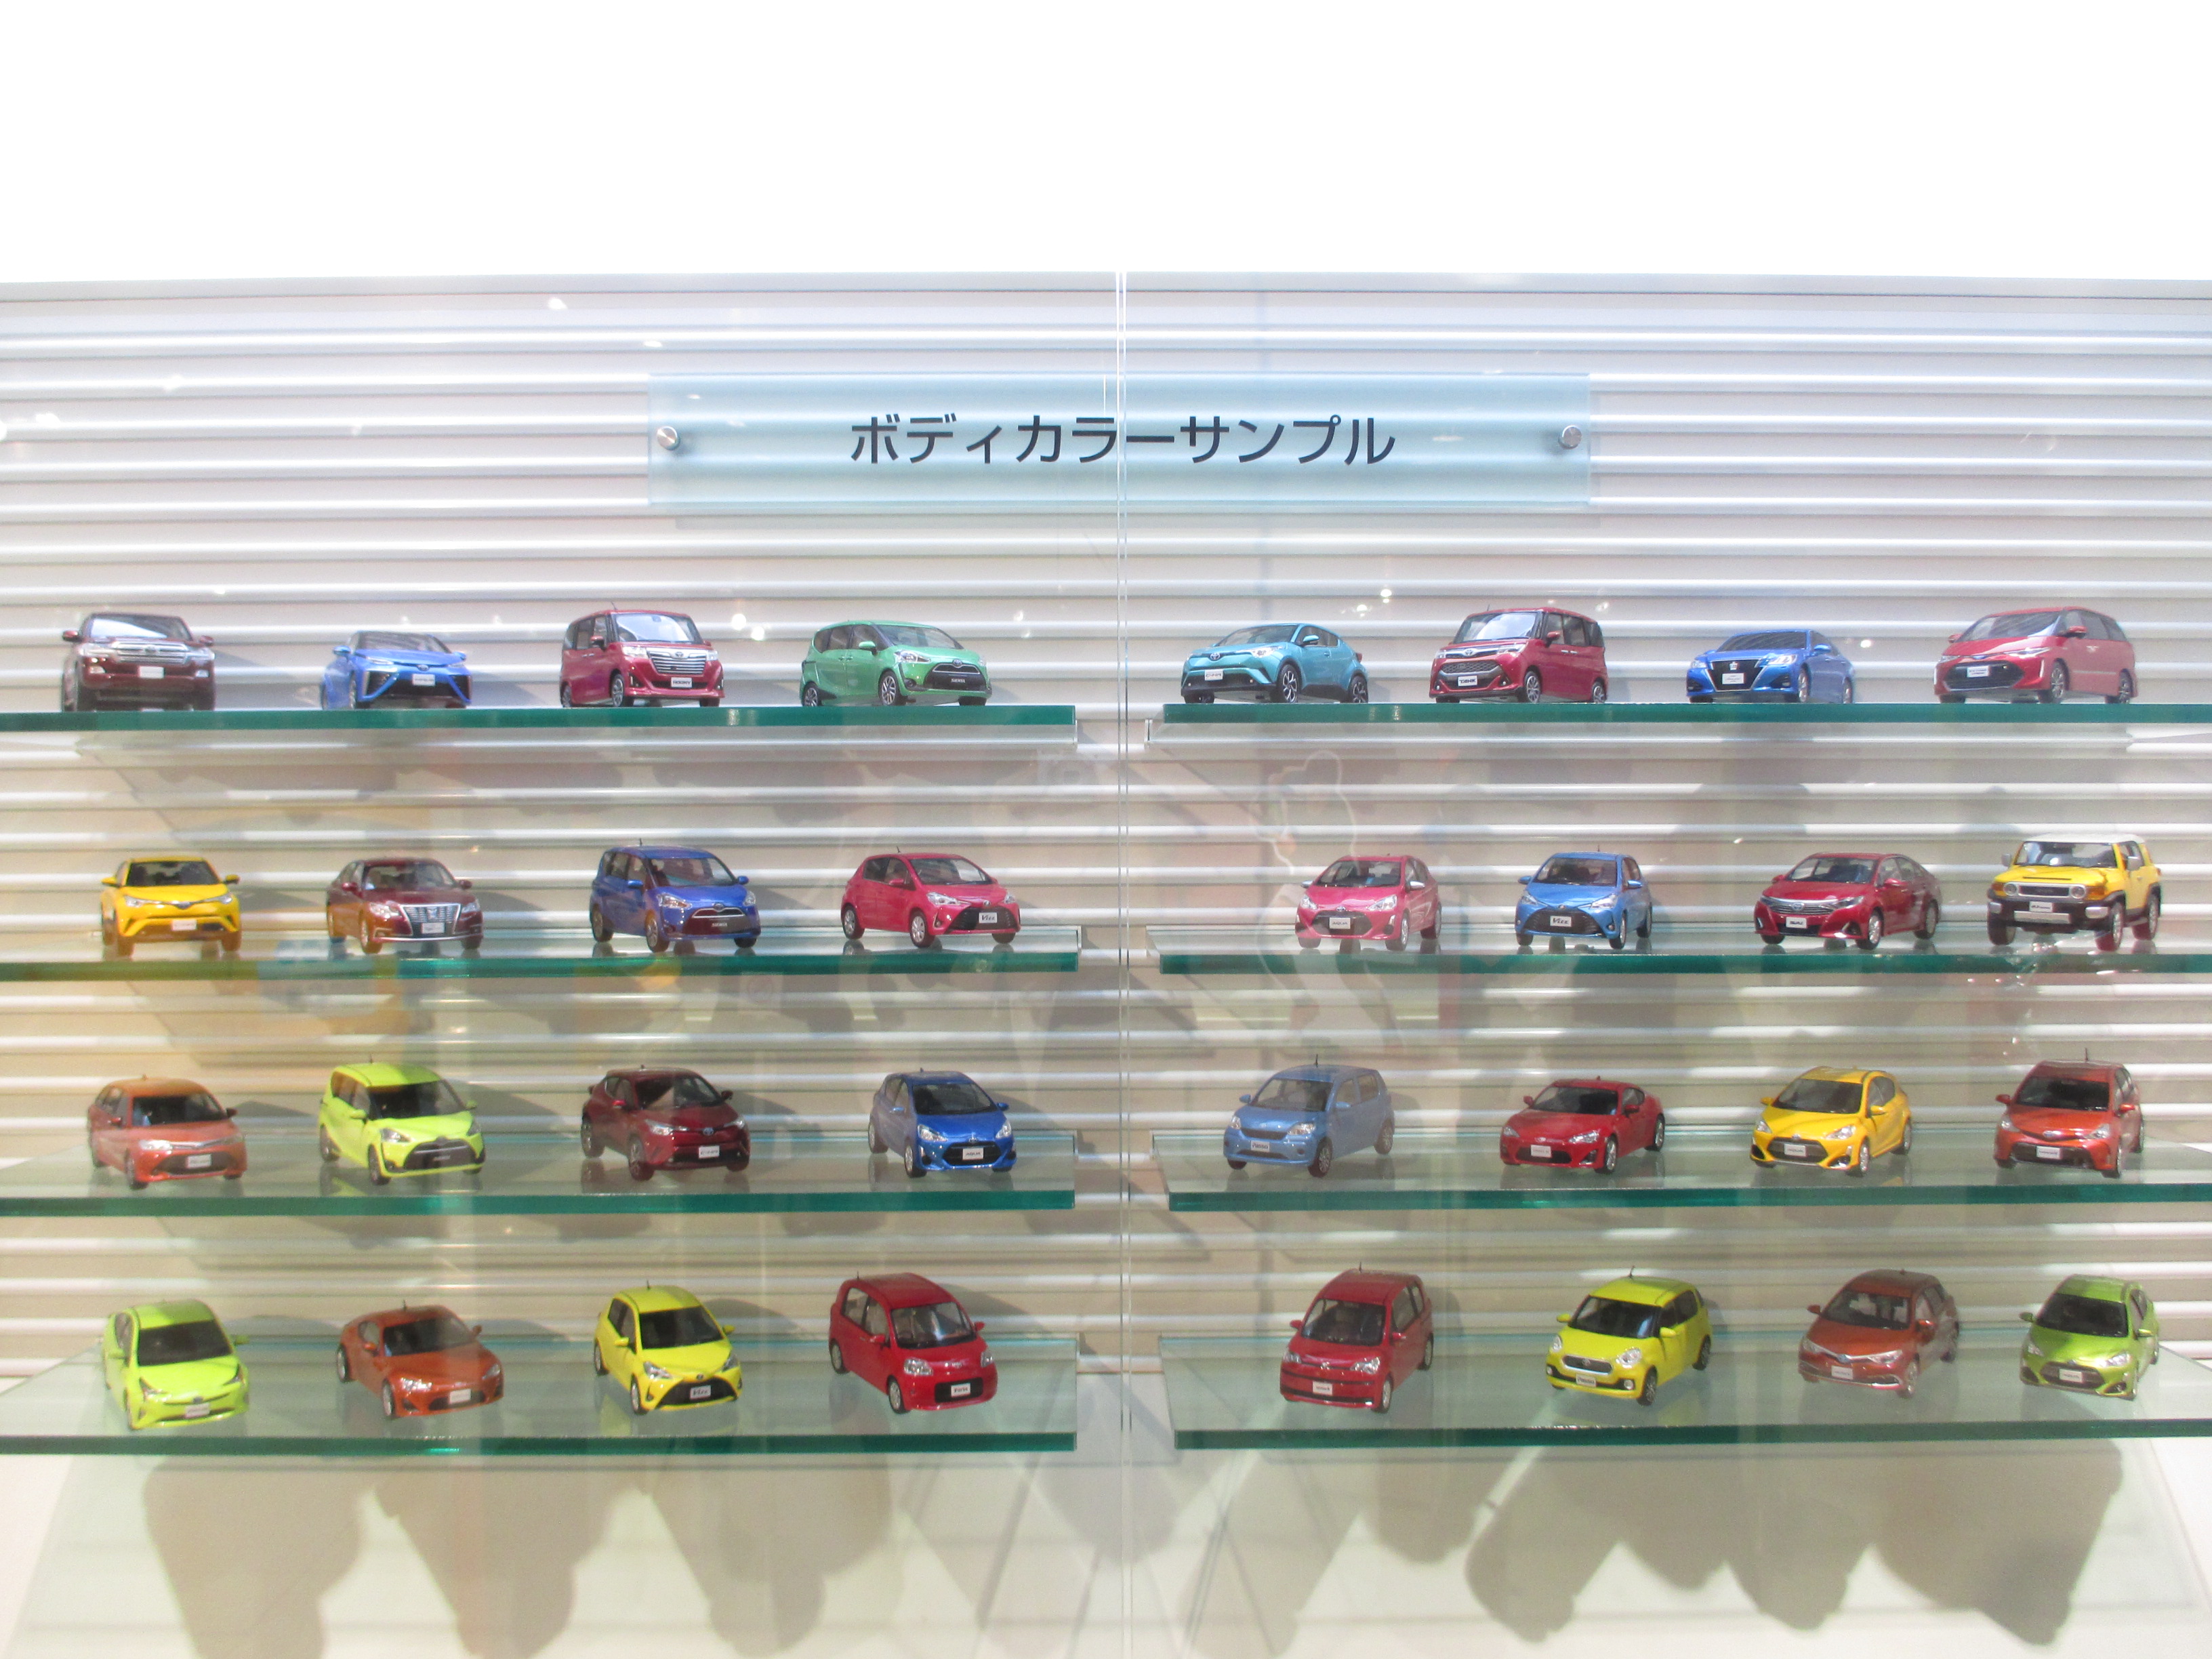 ミニカー展示について | トヨタ自動車ショールーム 公式ブログ